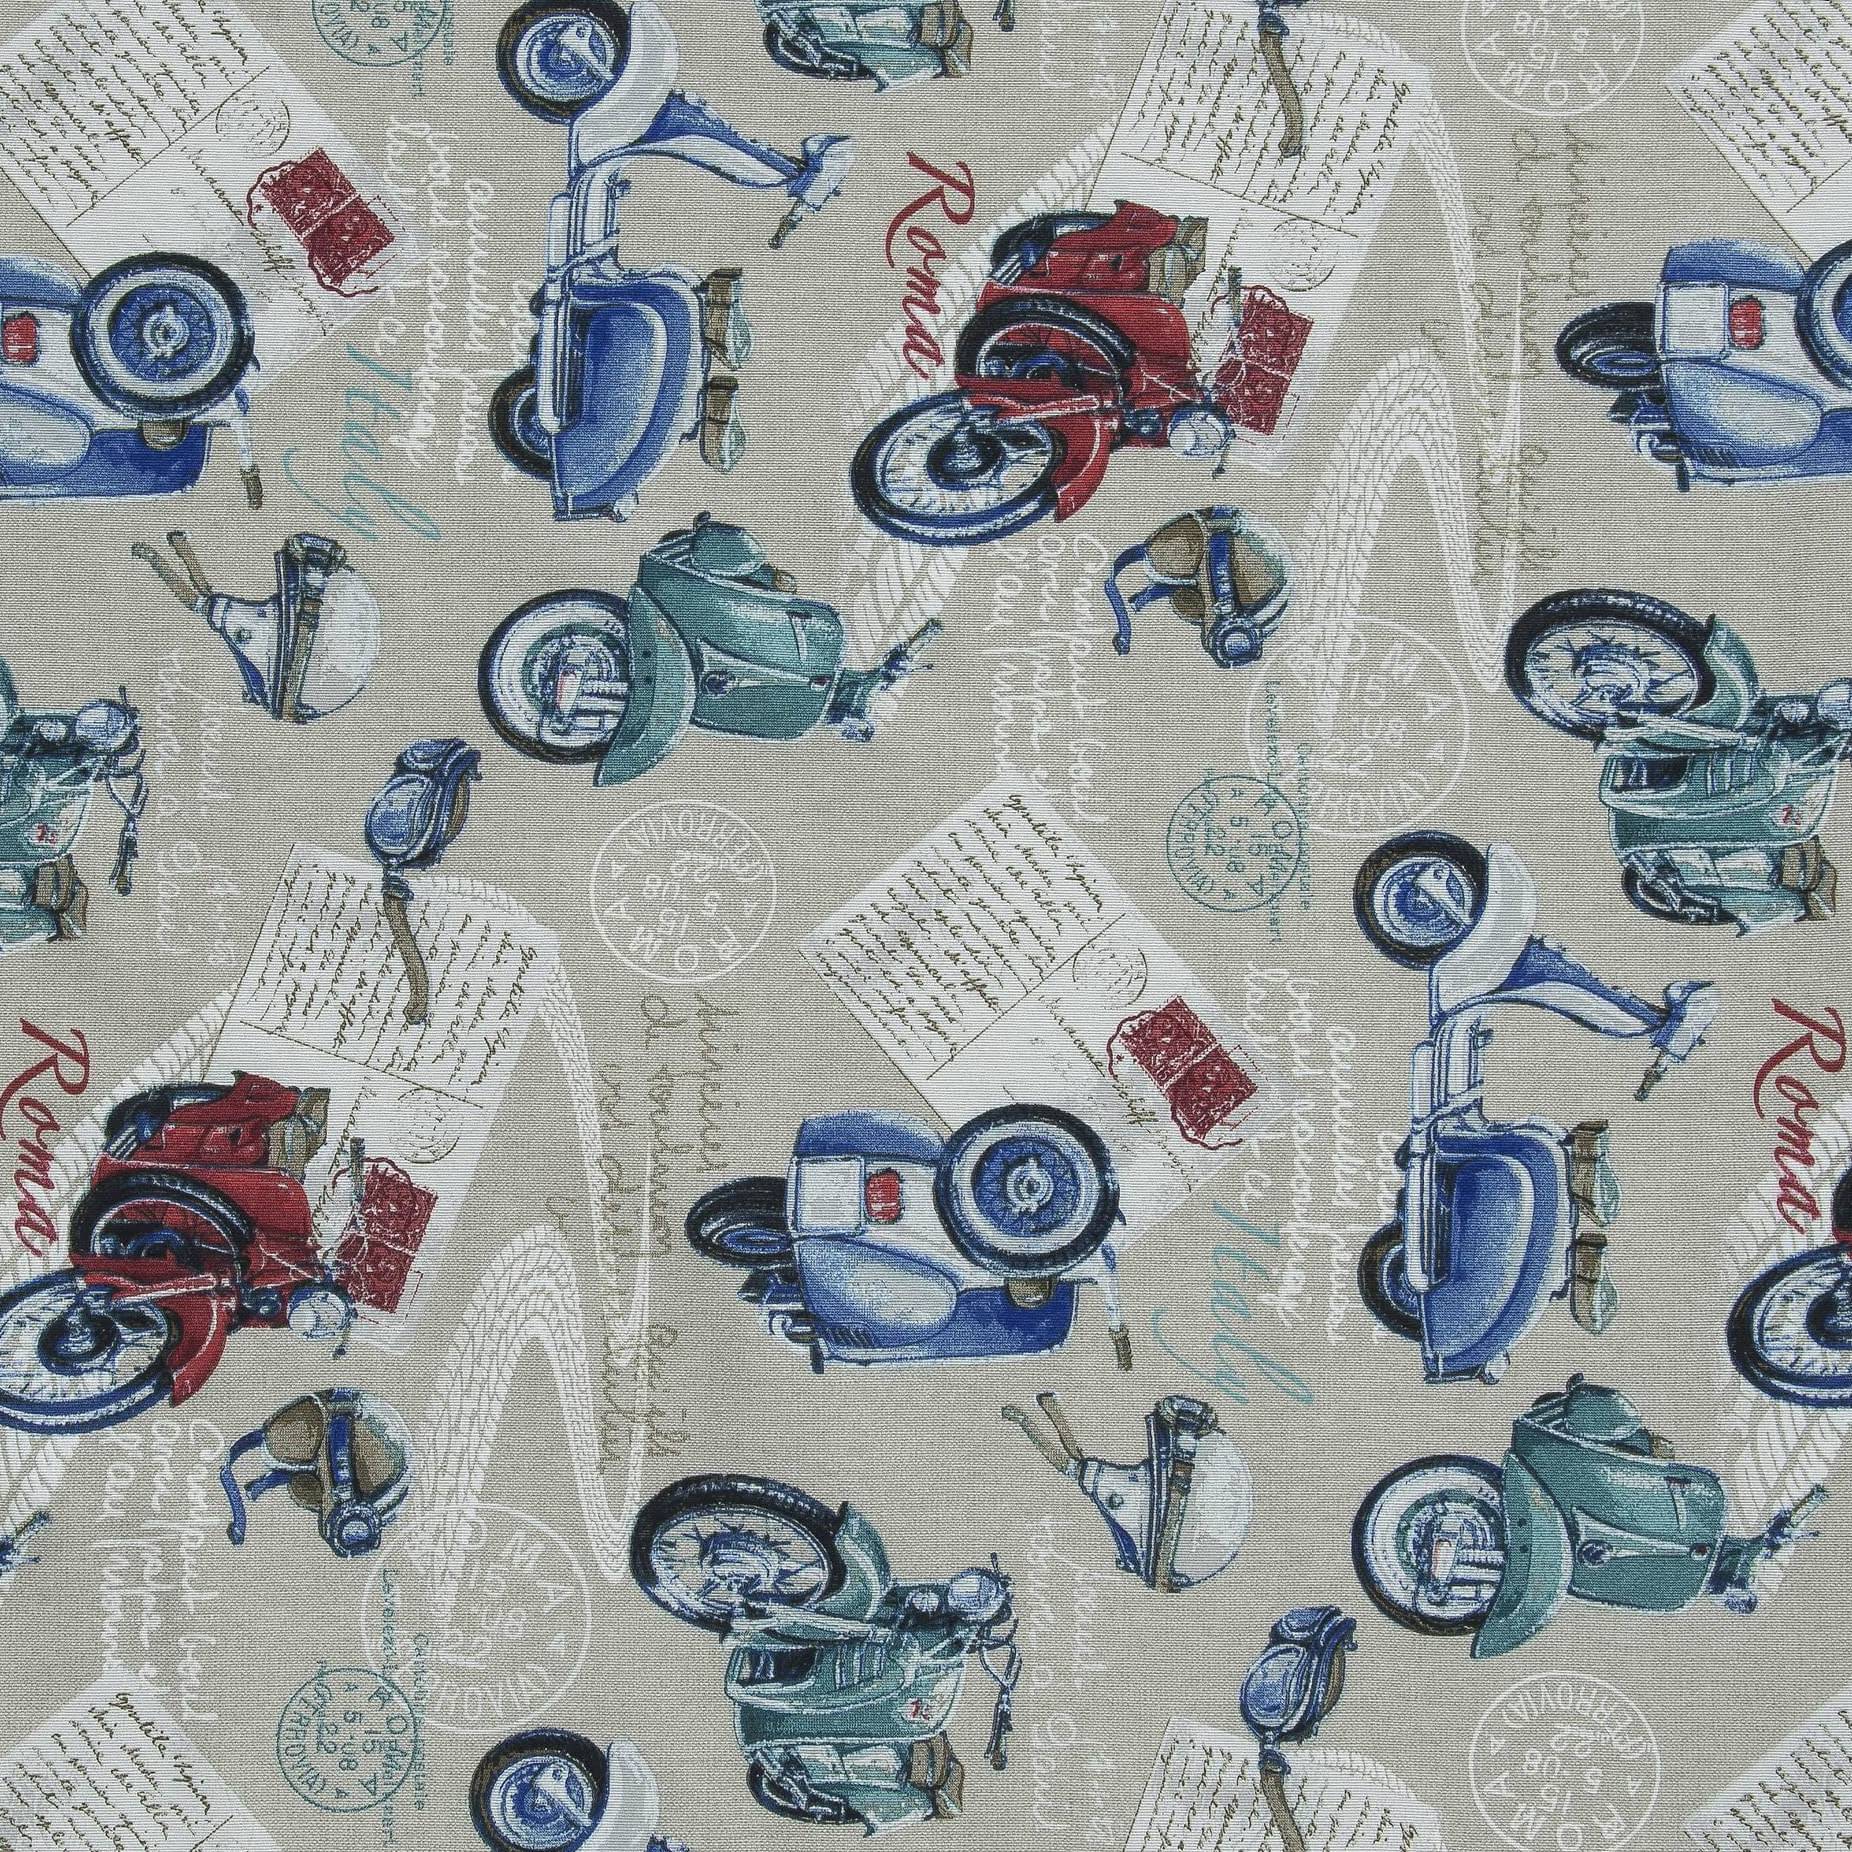 Декоративна тканина Веспа, мотоцикли, бавовна 70%, 157г / м, 50x70 см